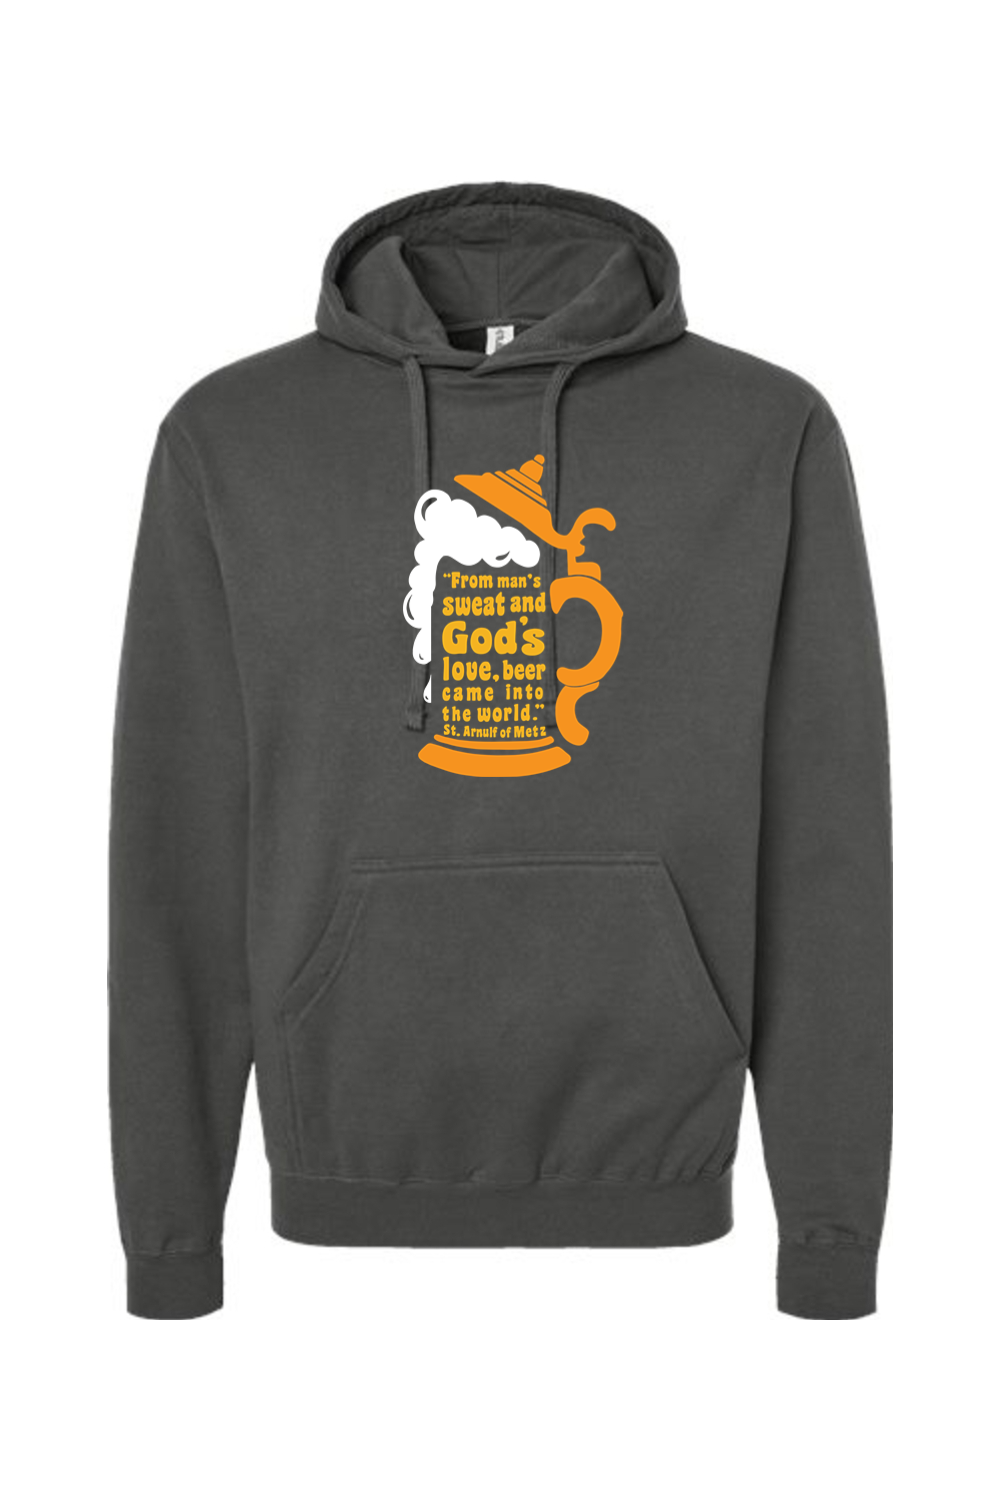 Beer Stein Quote - Hoodie Sweatshirt